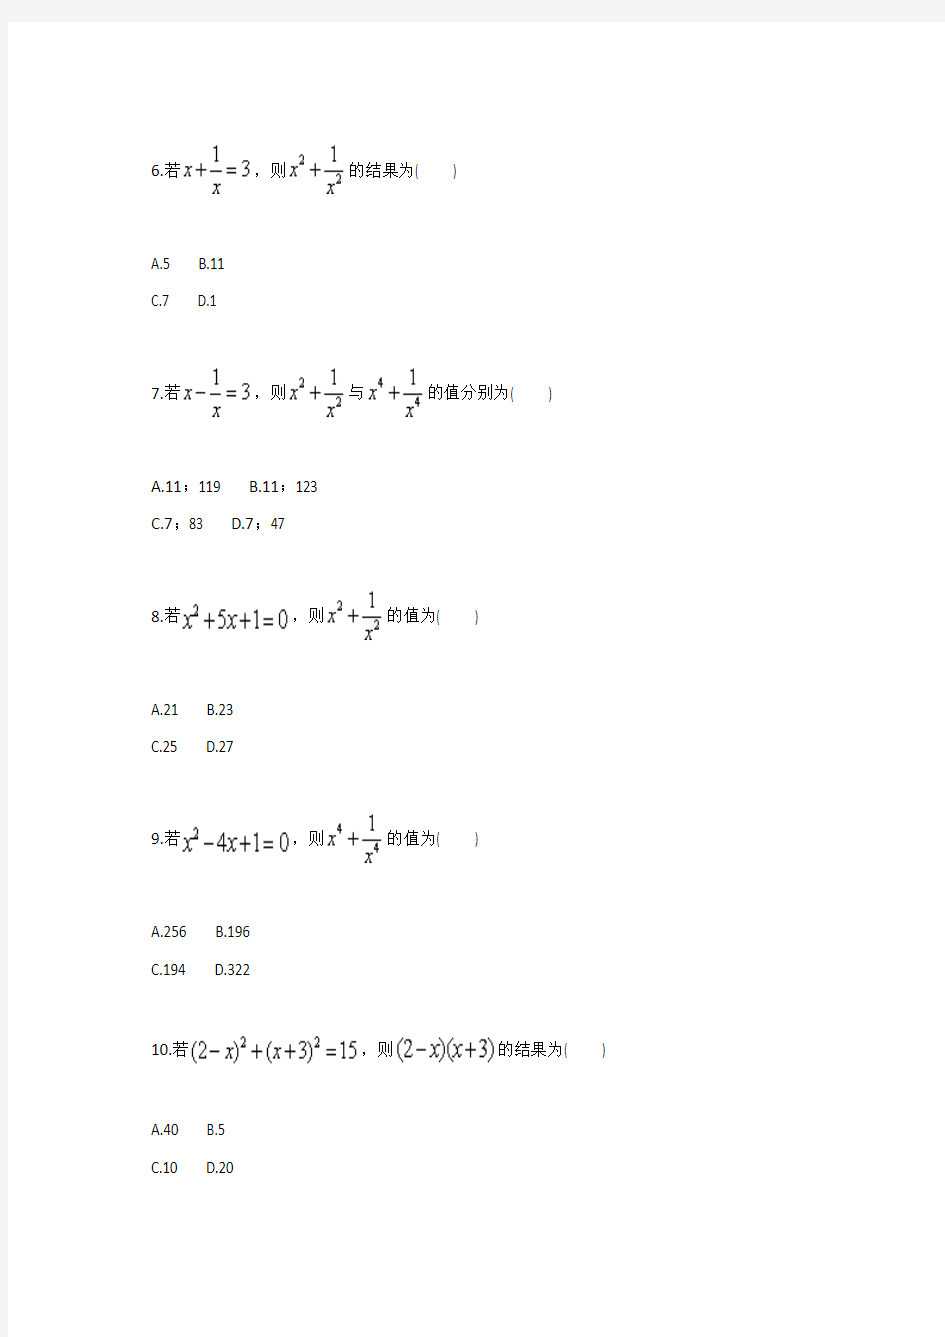 完全平方公式的综合应用(知二求二)(二)(人教版)